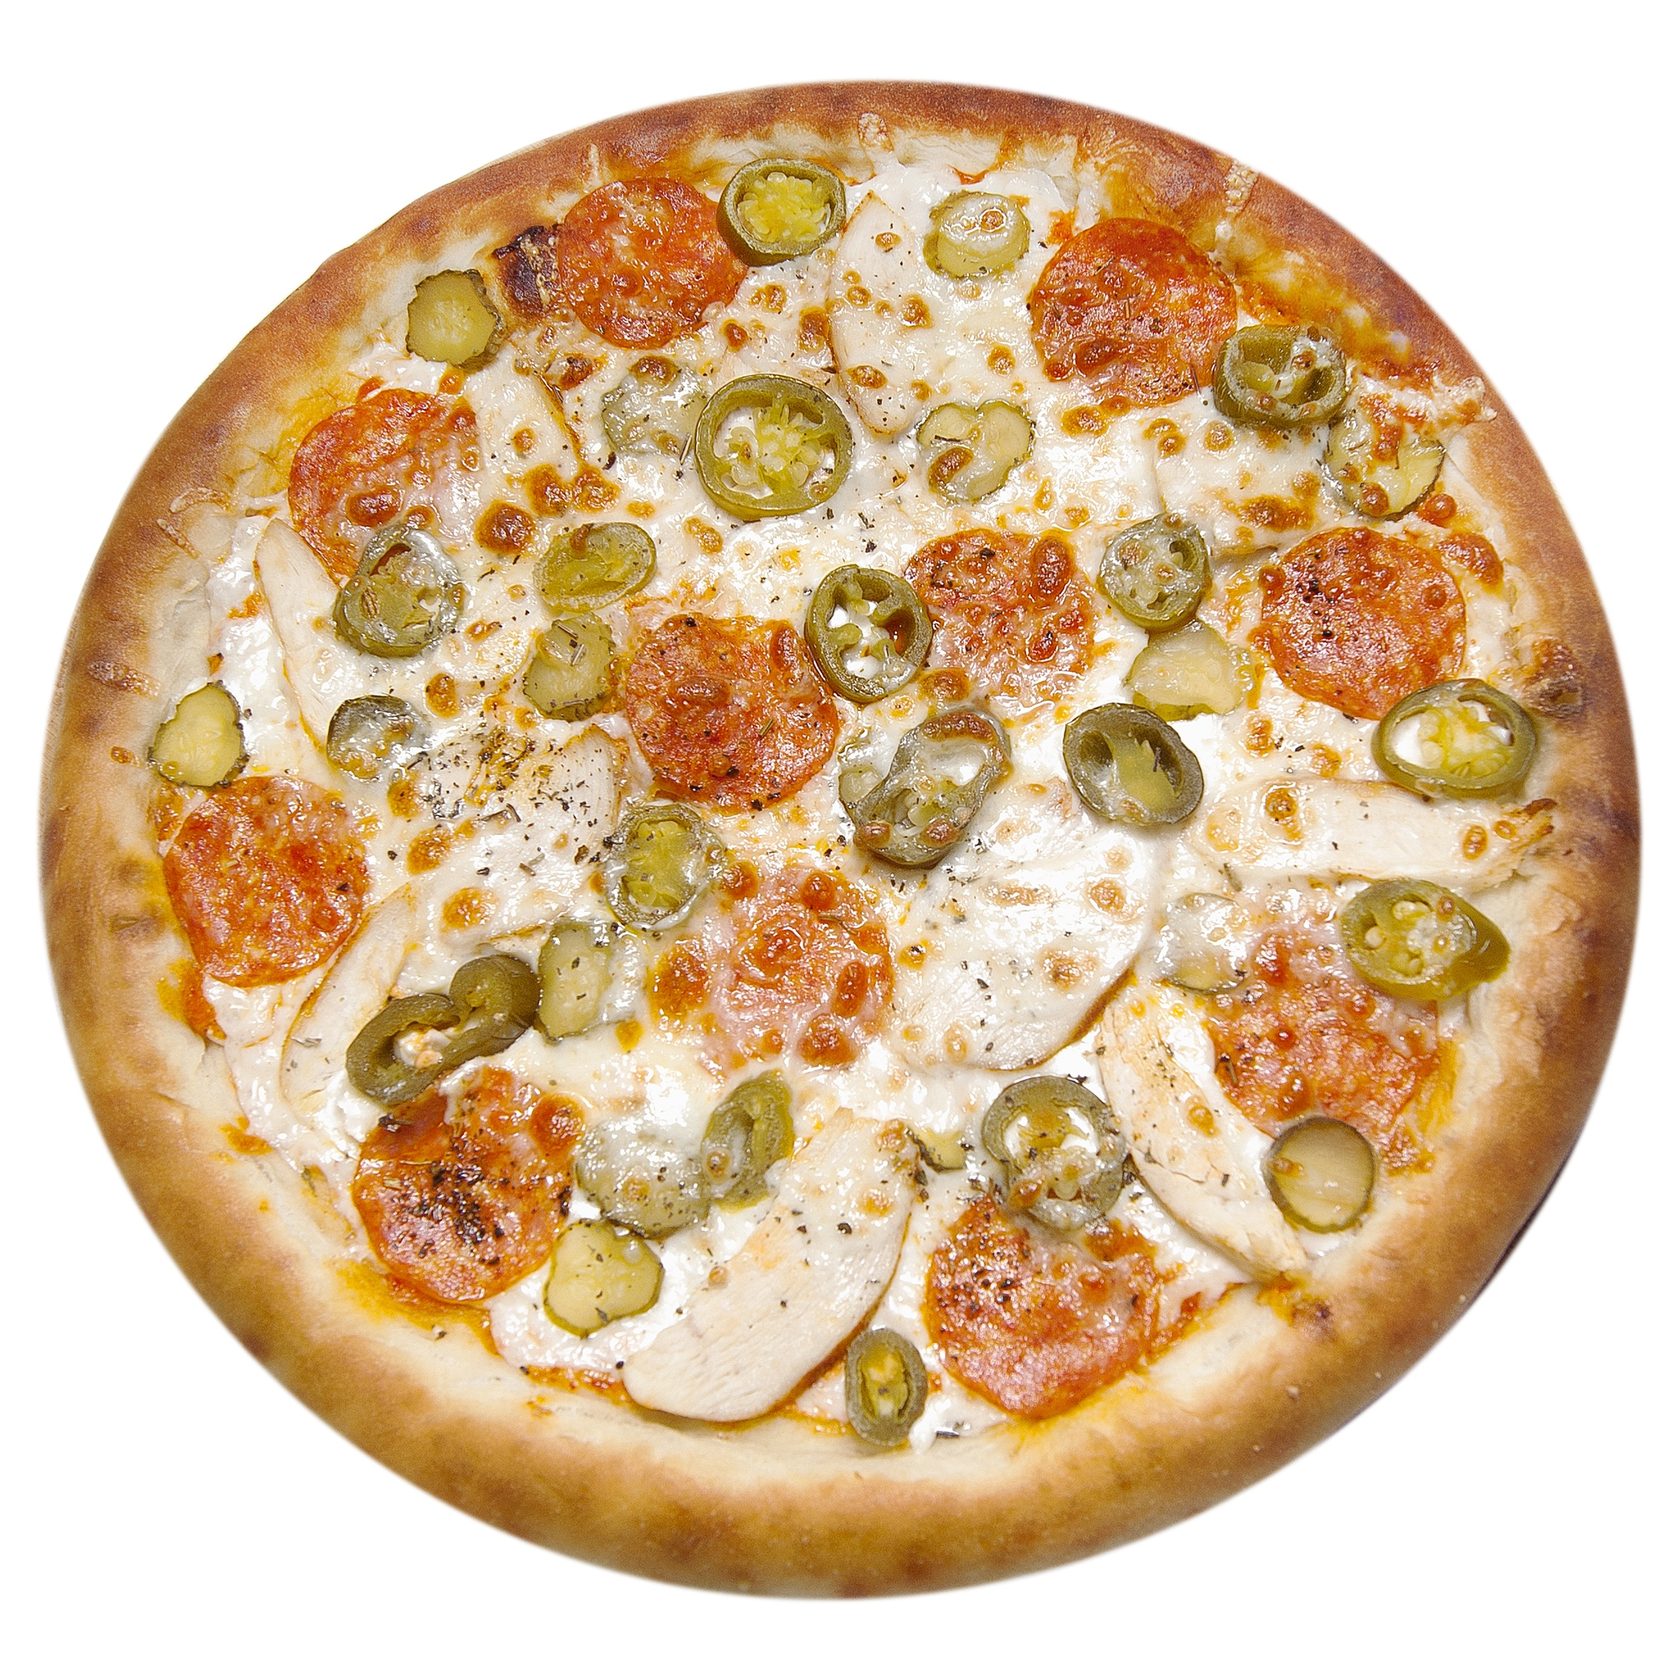 пепперони это что такое в пицце фото фото 108